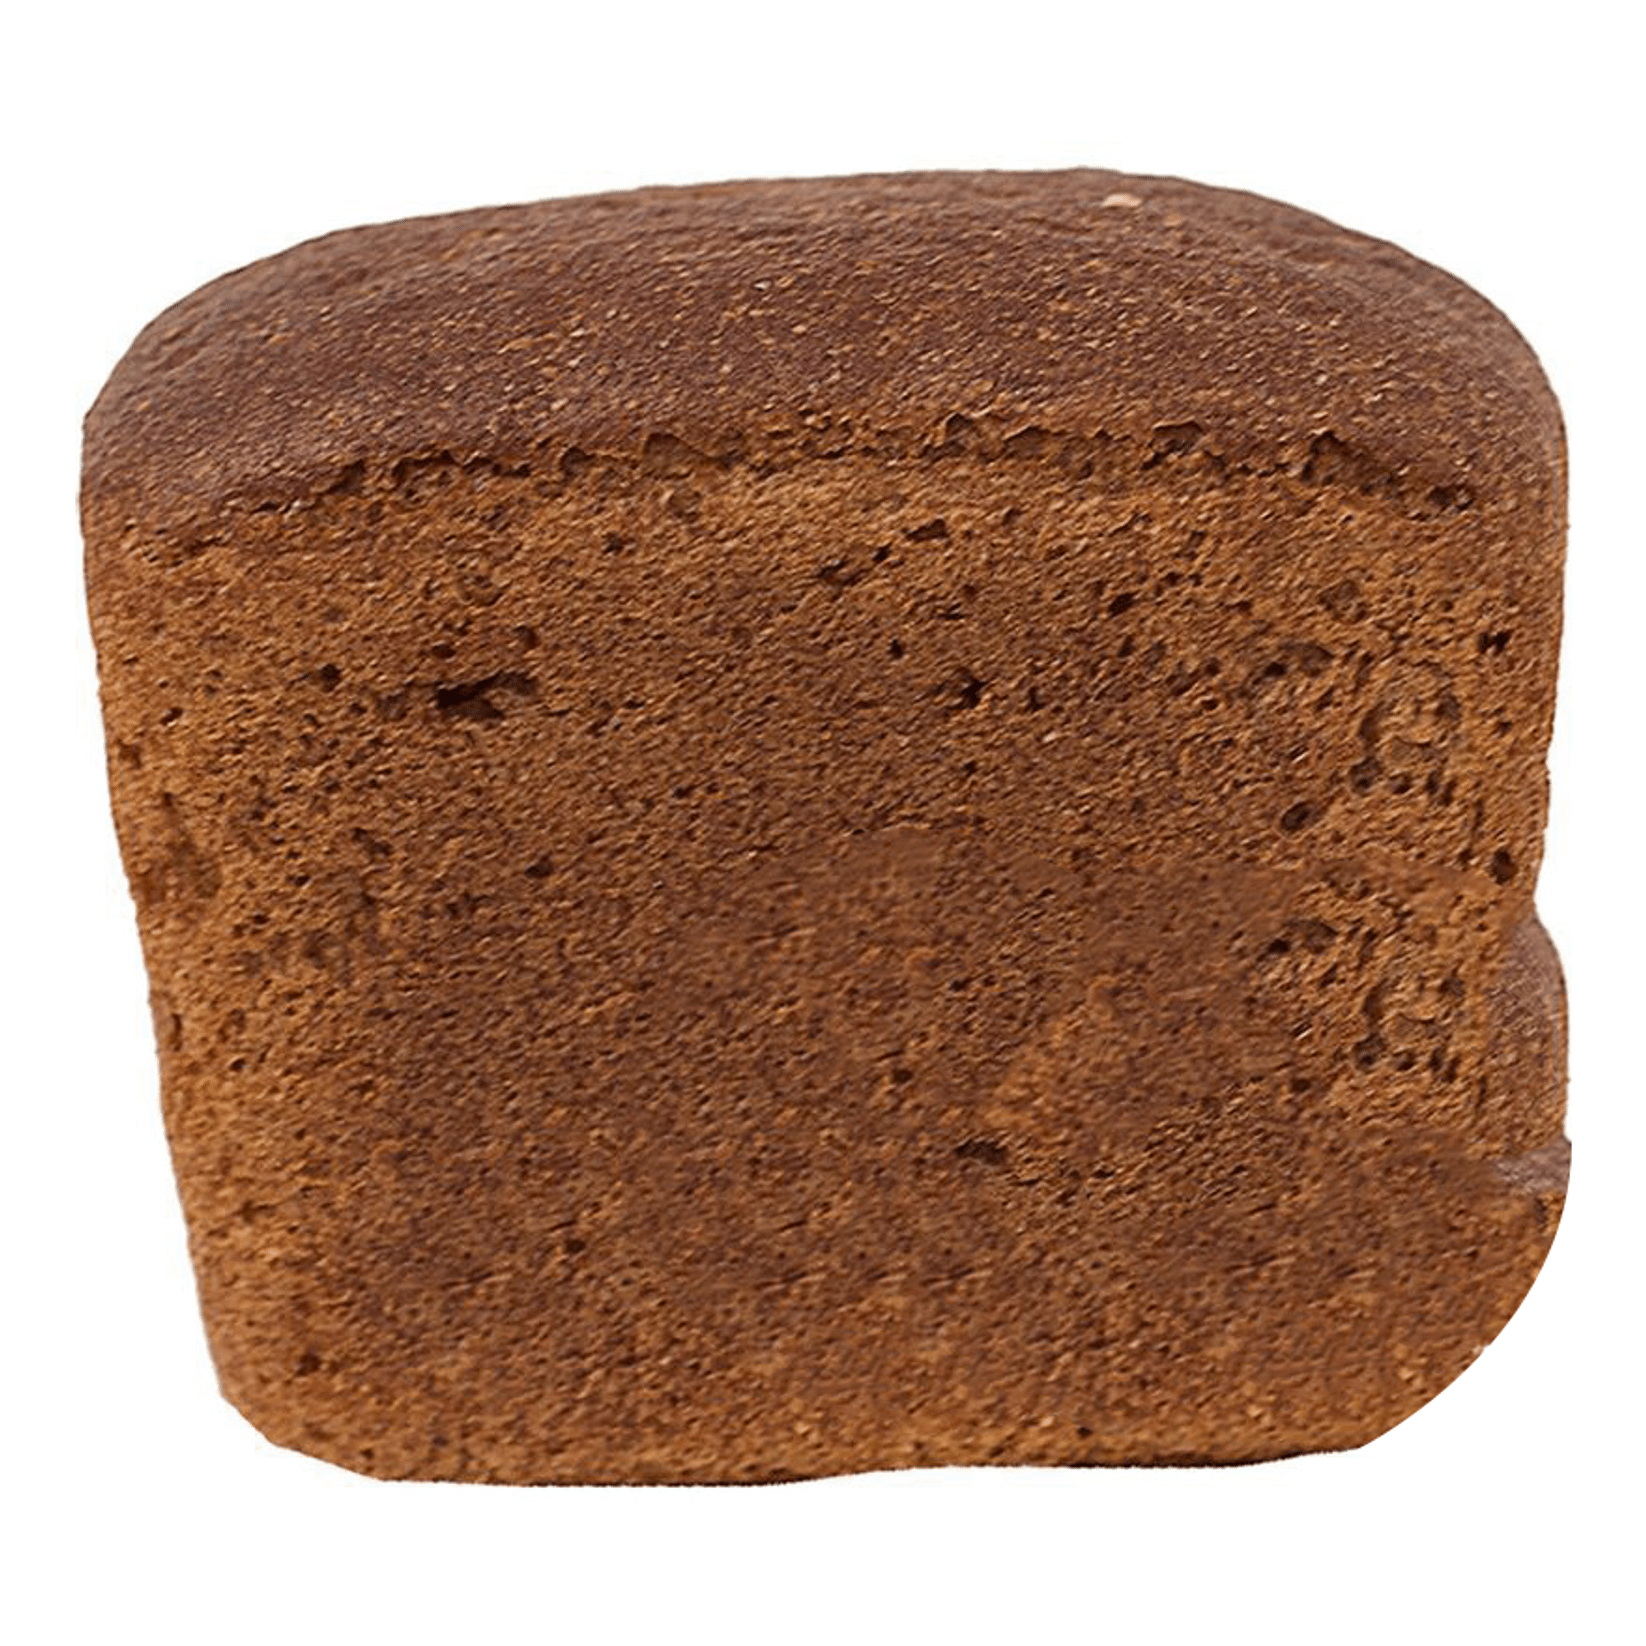 Хлеб Буше Питерский ржано-пшеничный 340 г